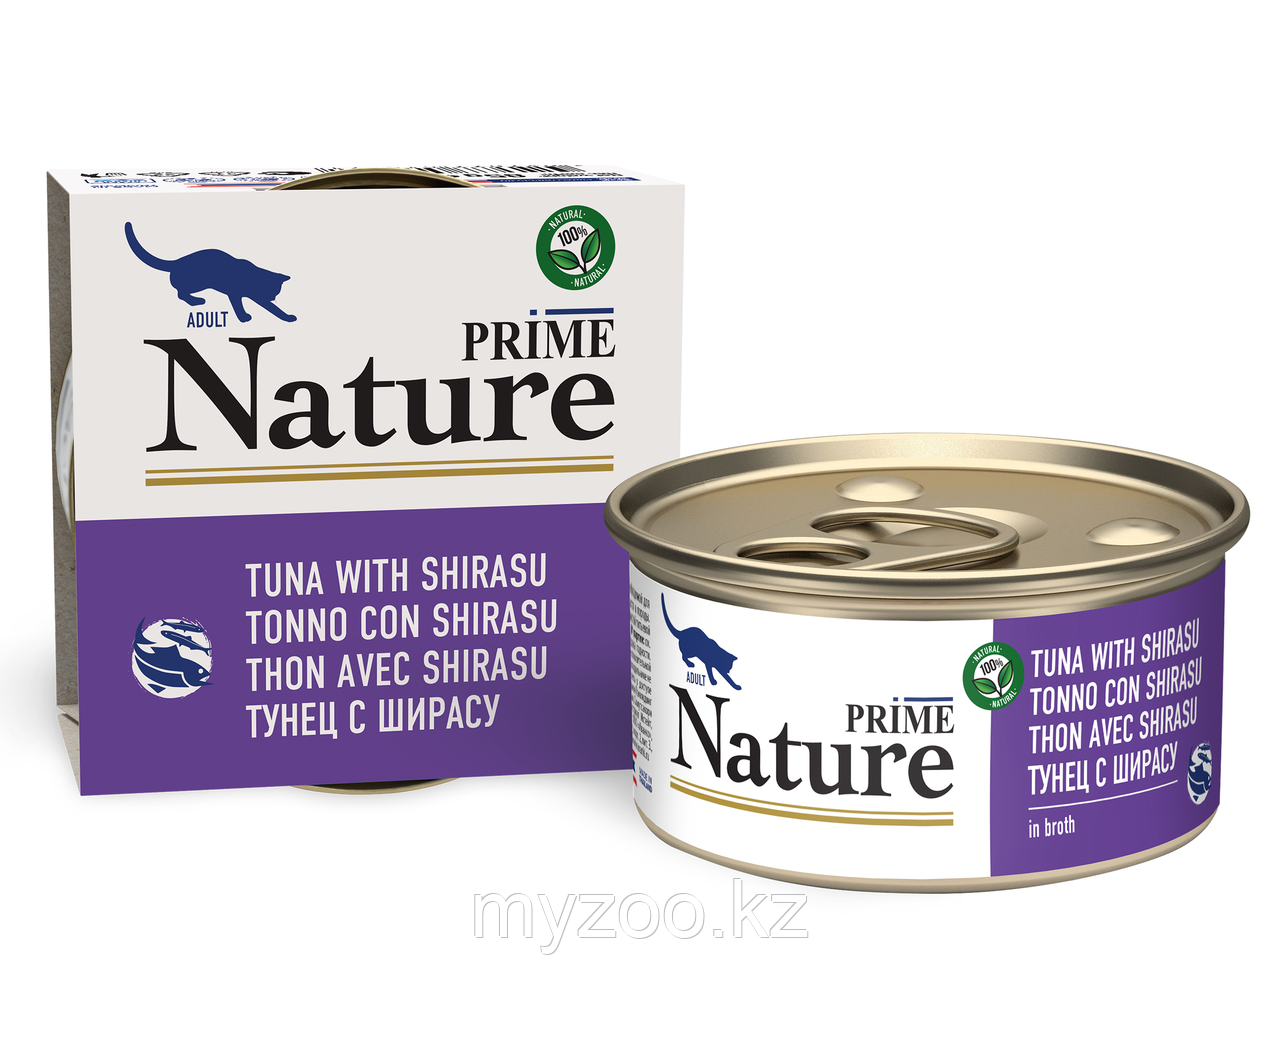 Prime Nature консервы для кошек тунец с ширасу в бульоне, 85гр